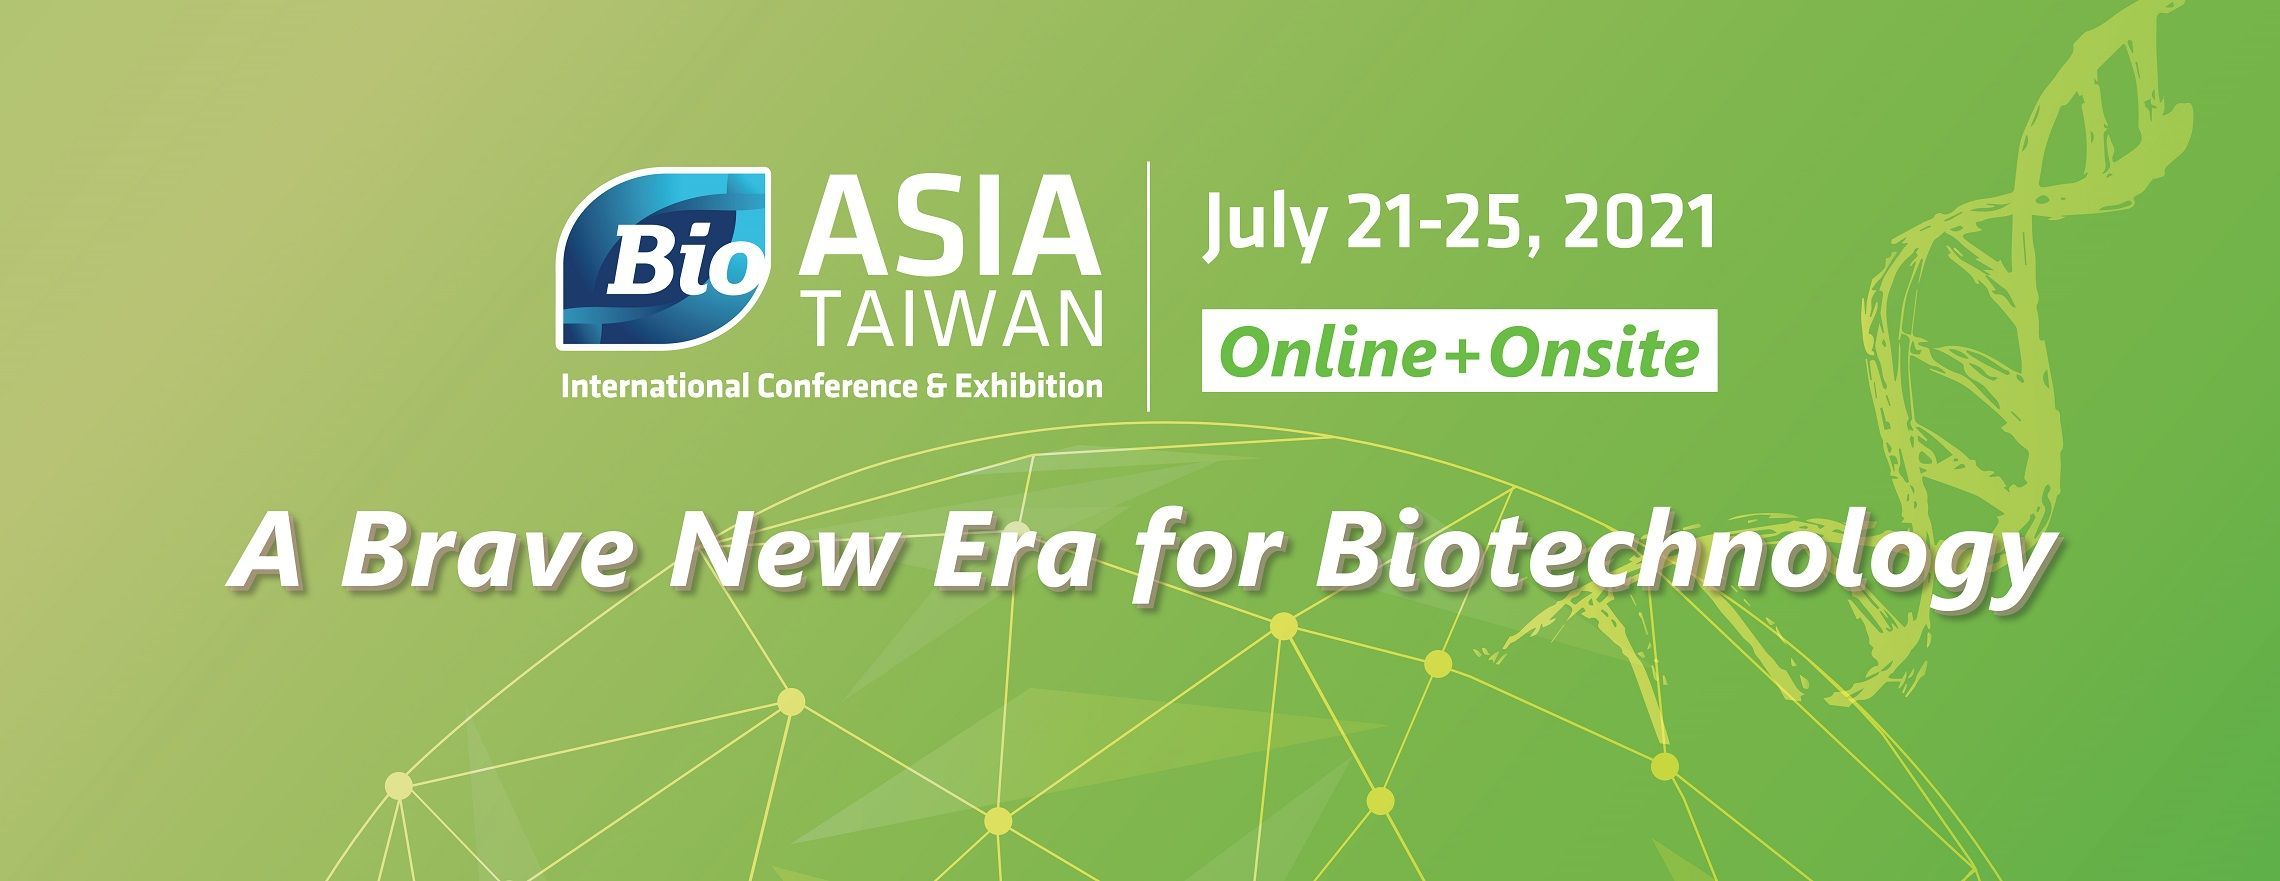 展示会情報 2021 台湾国際バイオテクノロジーおよび製薬機器展示会